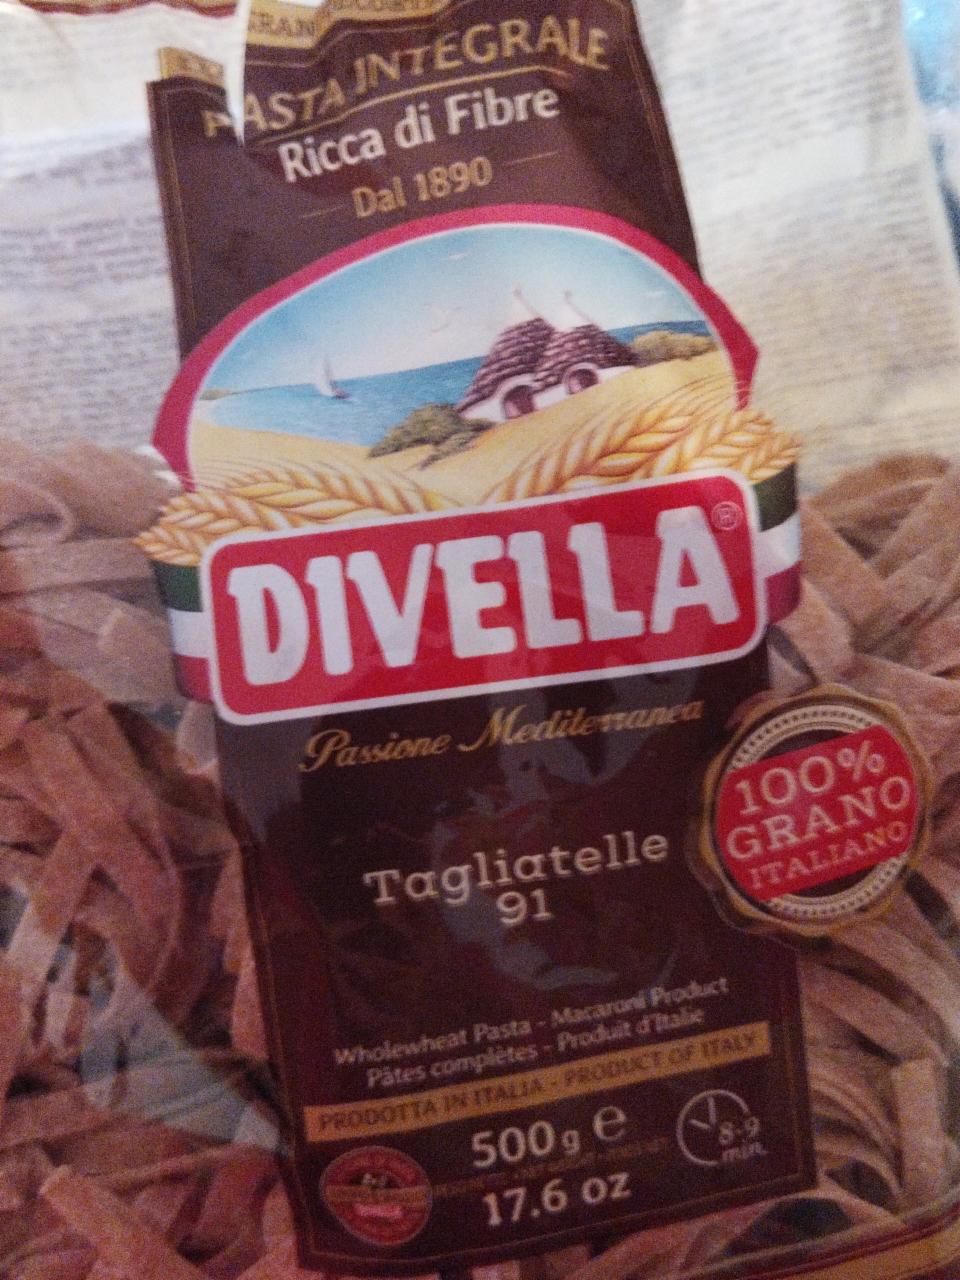 Fotografie - Pasta Integrale Tagliatelle 91 Divella